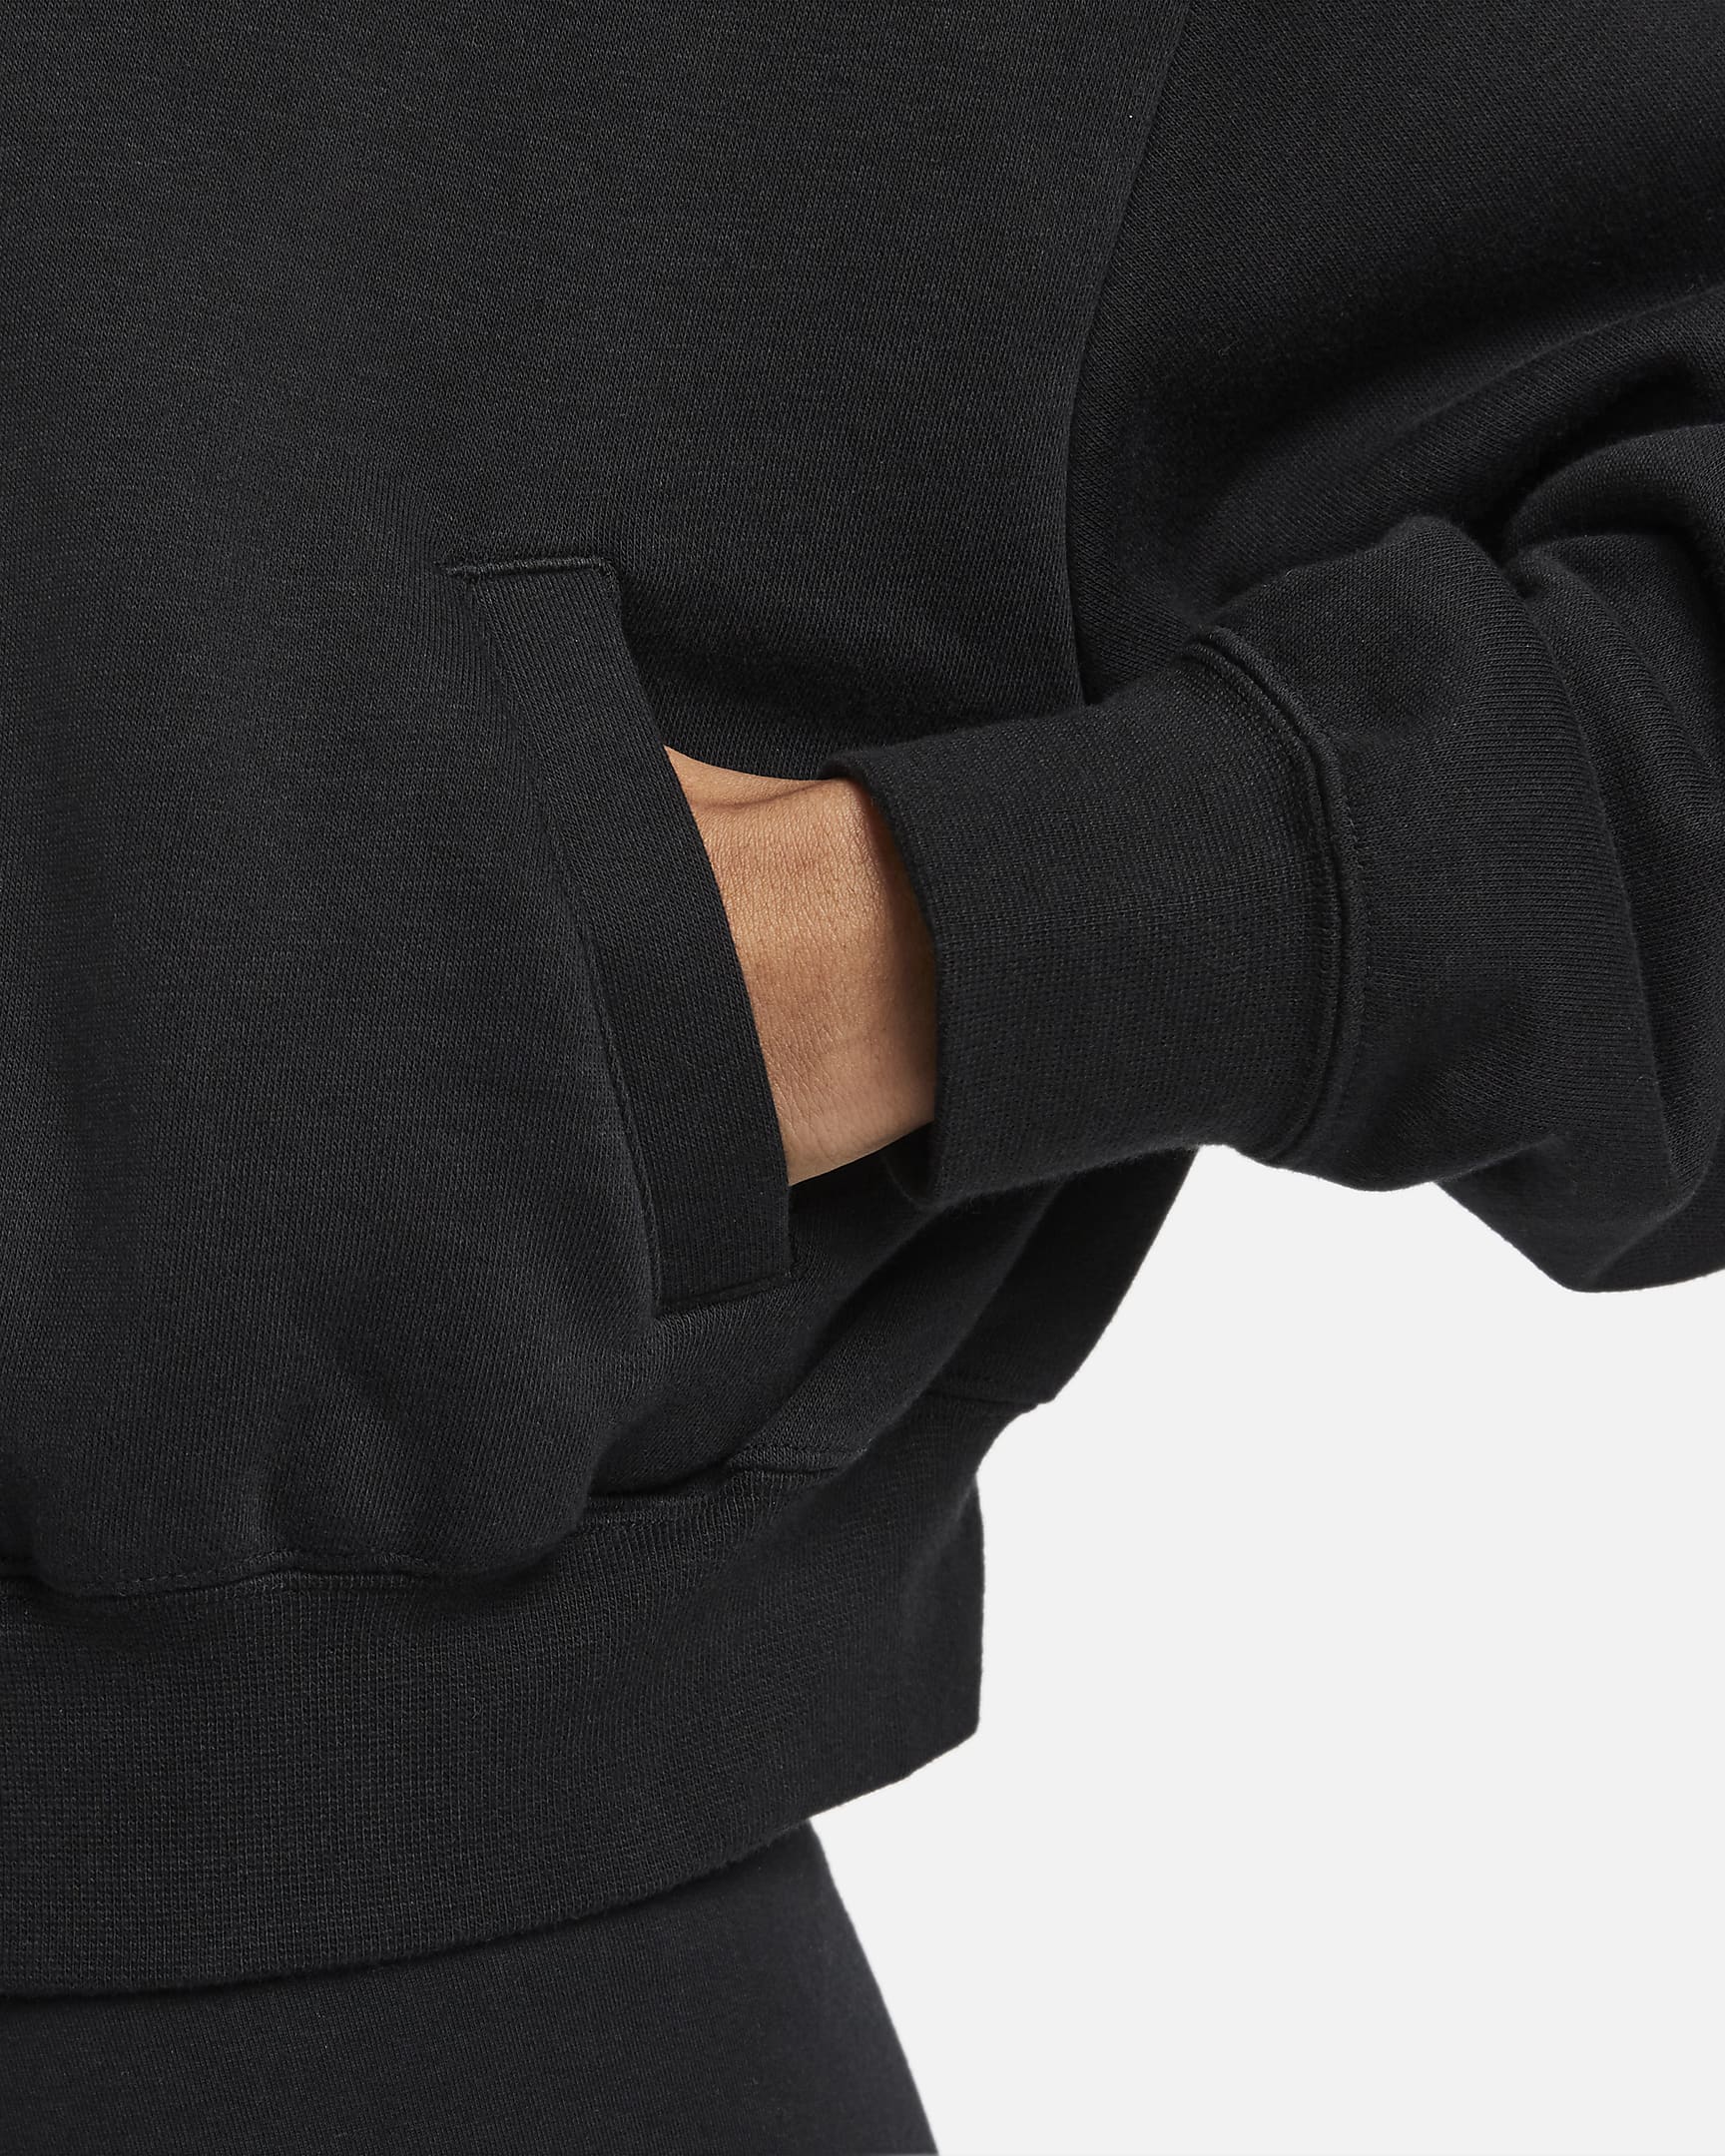 Nike Sportswear Club Fleece Women's Oversized Cropped Full-Zip Jacket ...